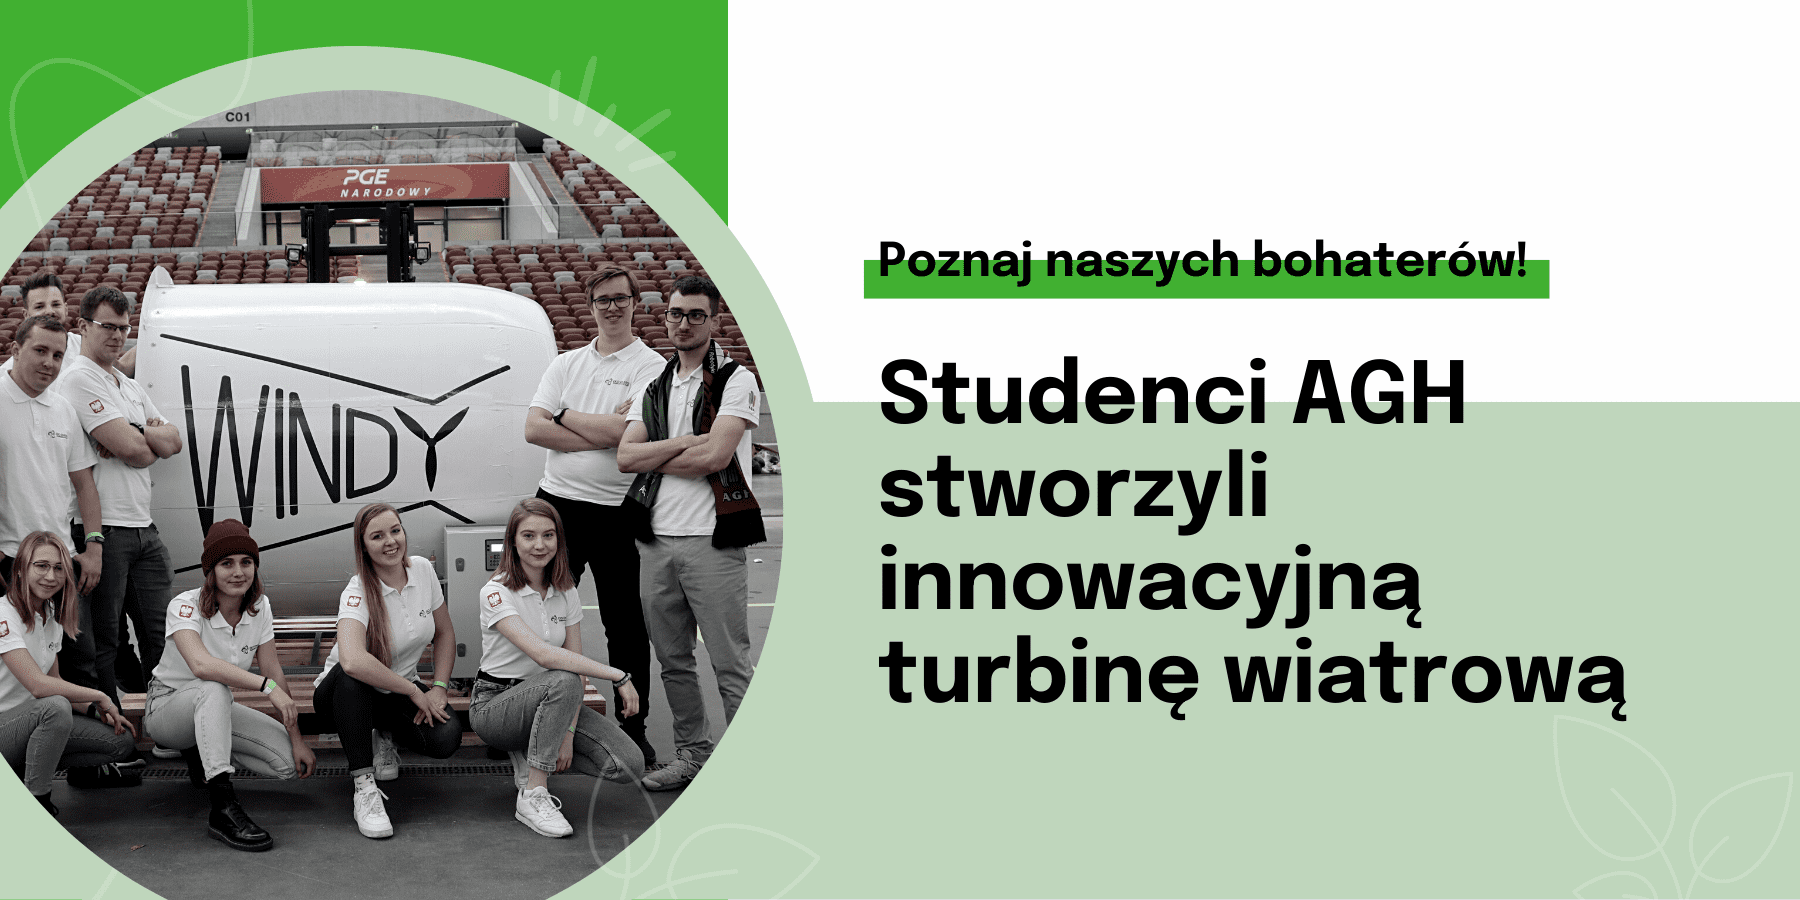 Studenci krakowskiej AGH stworzyli pionierską turbinę wiatrową z trzema generatorami